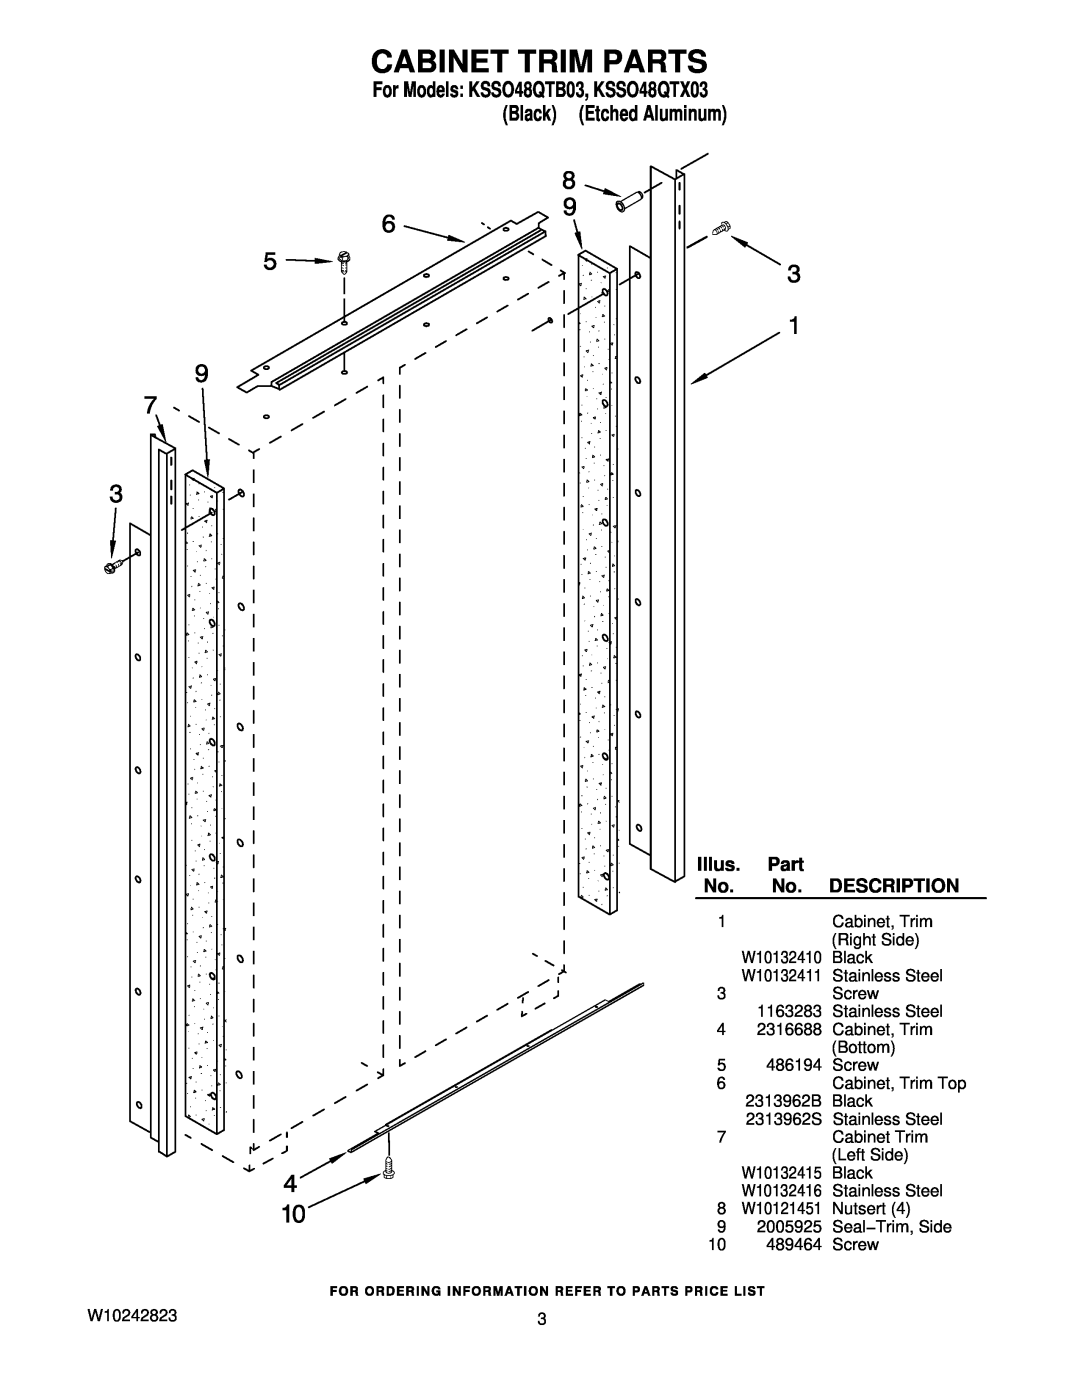 KitchenAid manual Cabinet Trim Parts, For Models KSSO48QTB03, KSSO48QTX03 Black Etched Aluminum, Illus, Description 